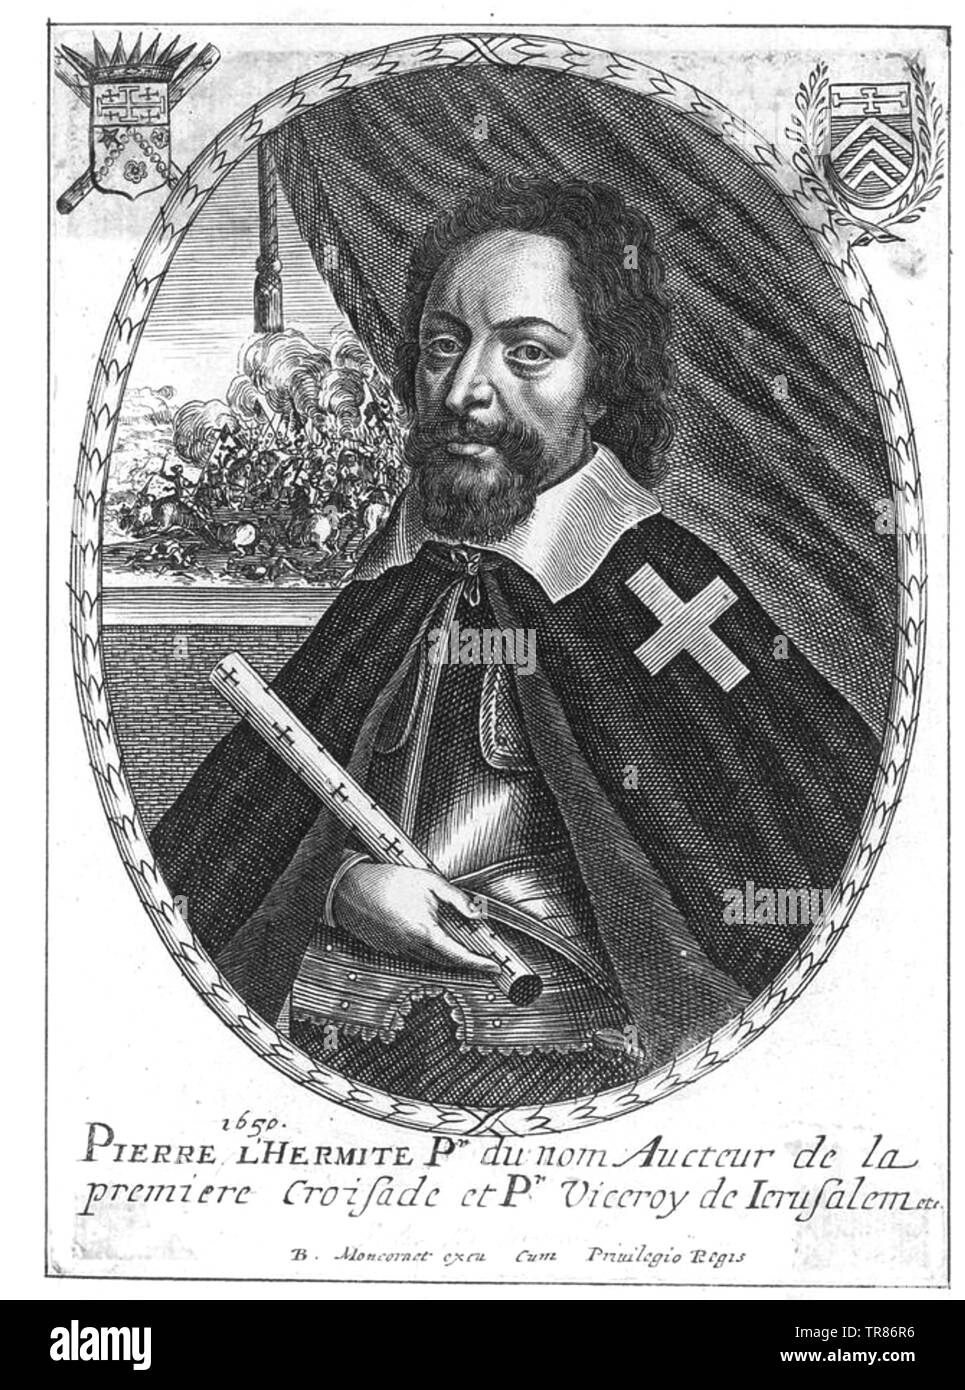 PETER der Einsiedler (c 1050-1115) Französische Priester, der eine führende Rolle in der Ersten Kreuzzug gespielt Stockfoto